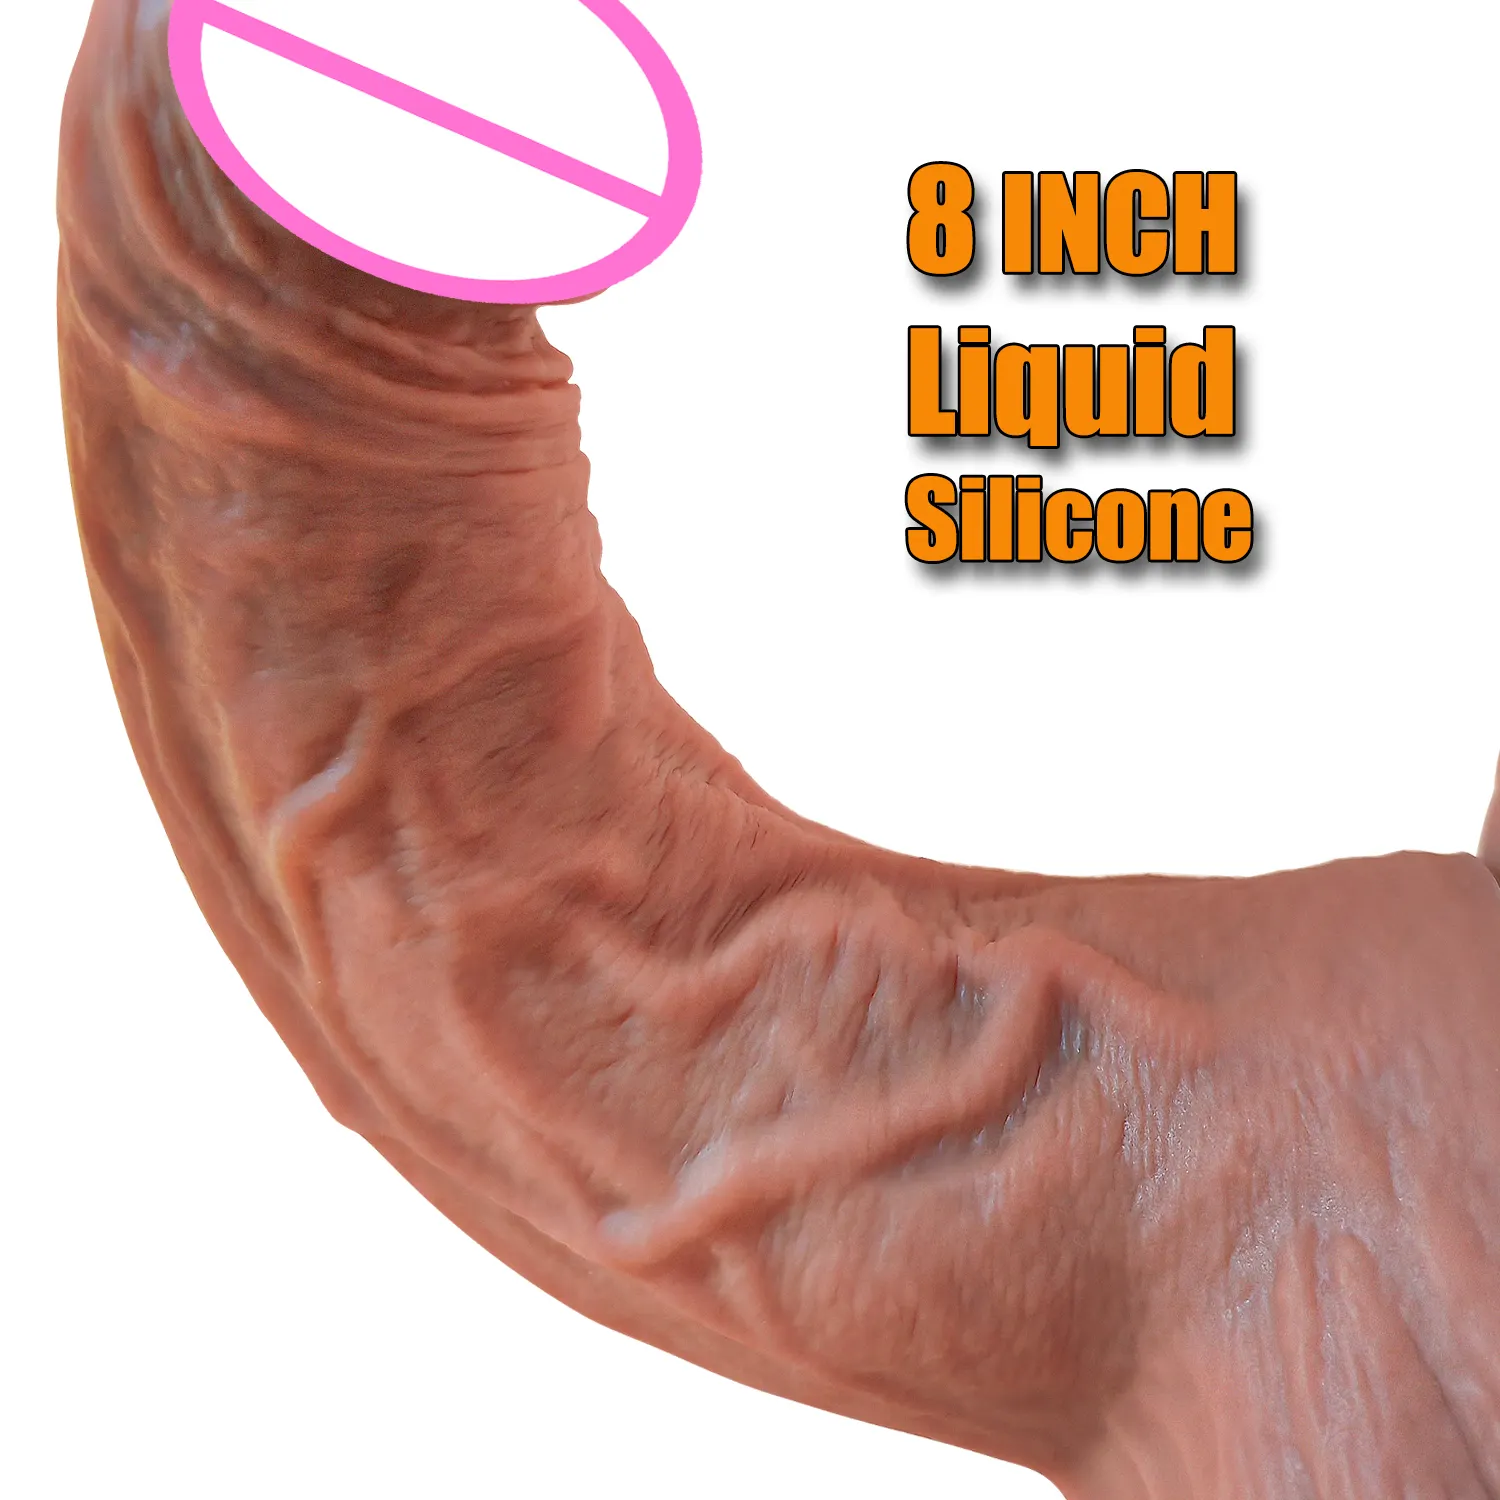 Koştu çin silikon yapay penis 11 inç çin silikon yapay penis horoz ve topları Dong seks oyuncakları çin temizle silikon yapay penis